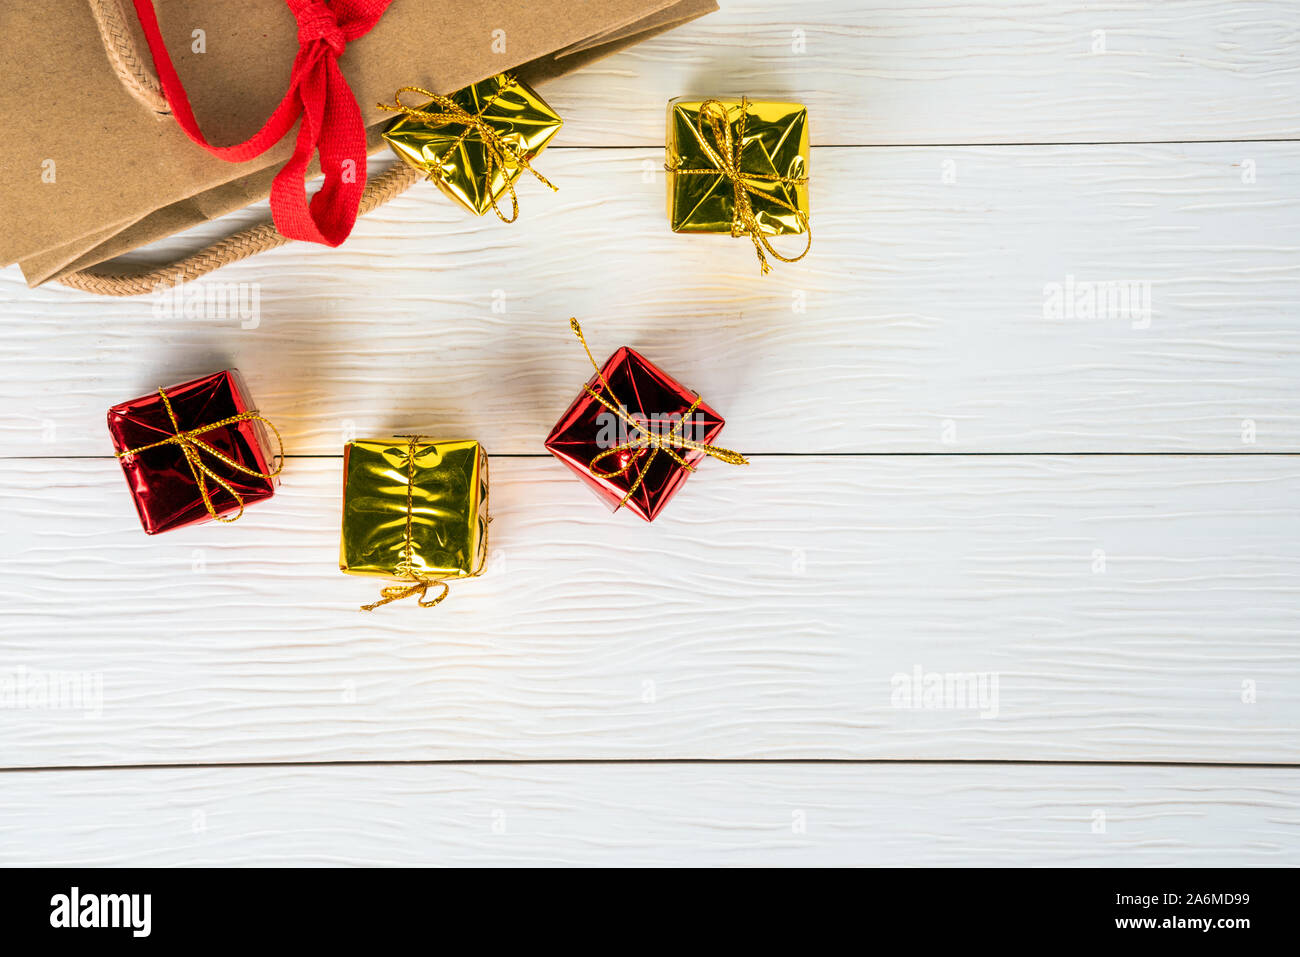 Weihnachtsgeschenke auf einem hölzernen Tisch knallen aus einer Papiertüte. Kopieren Sie Platz. Stockfoto